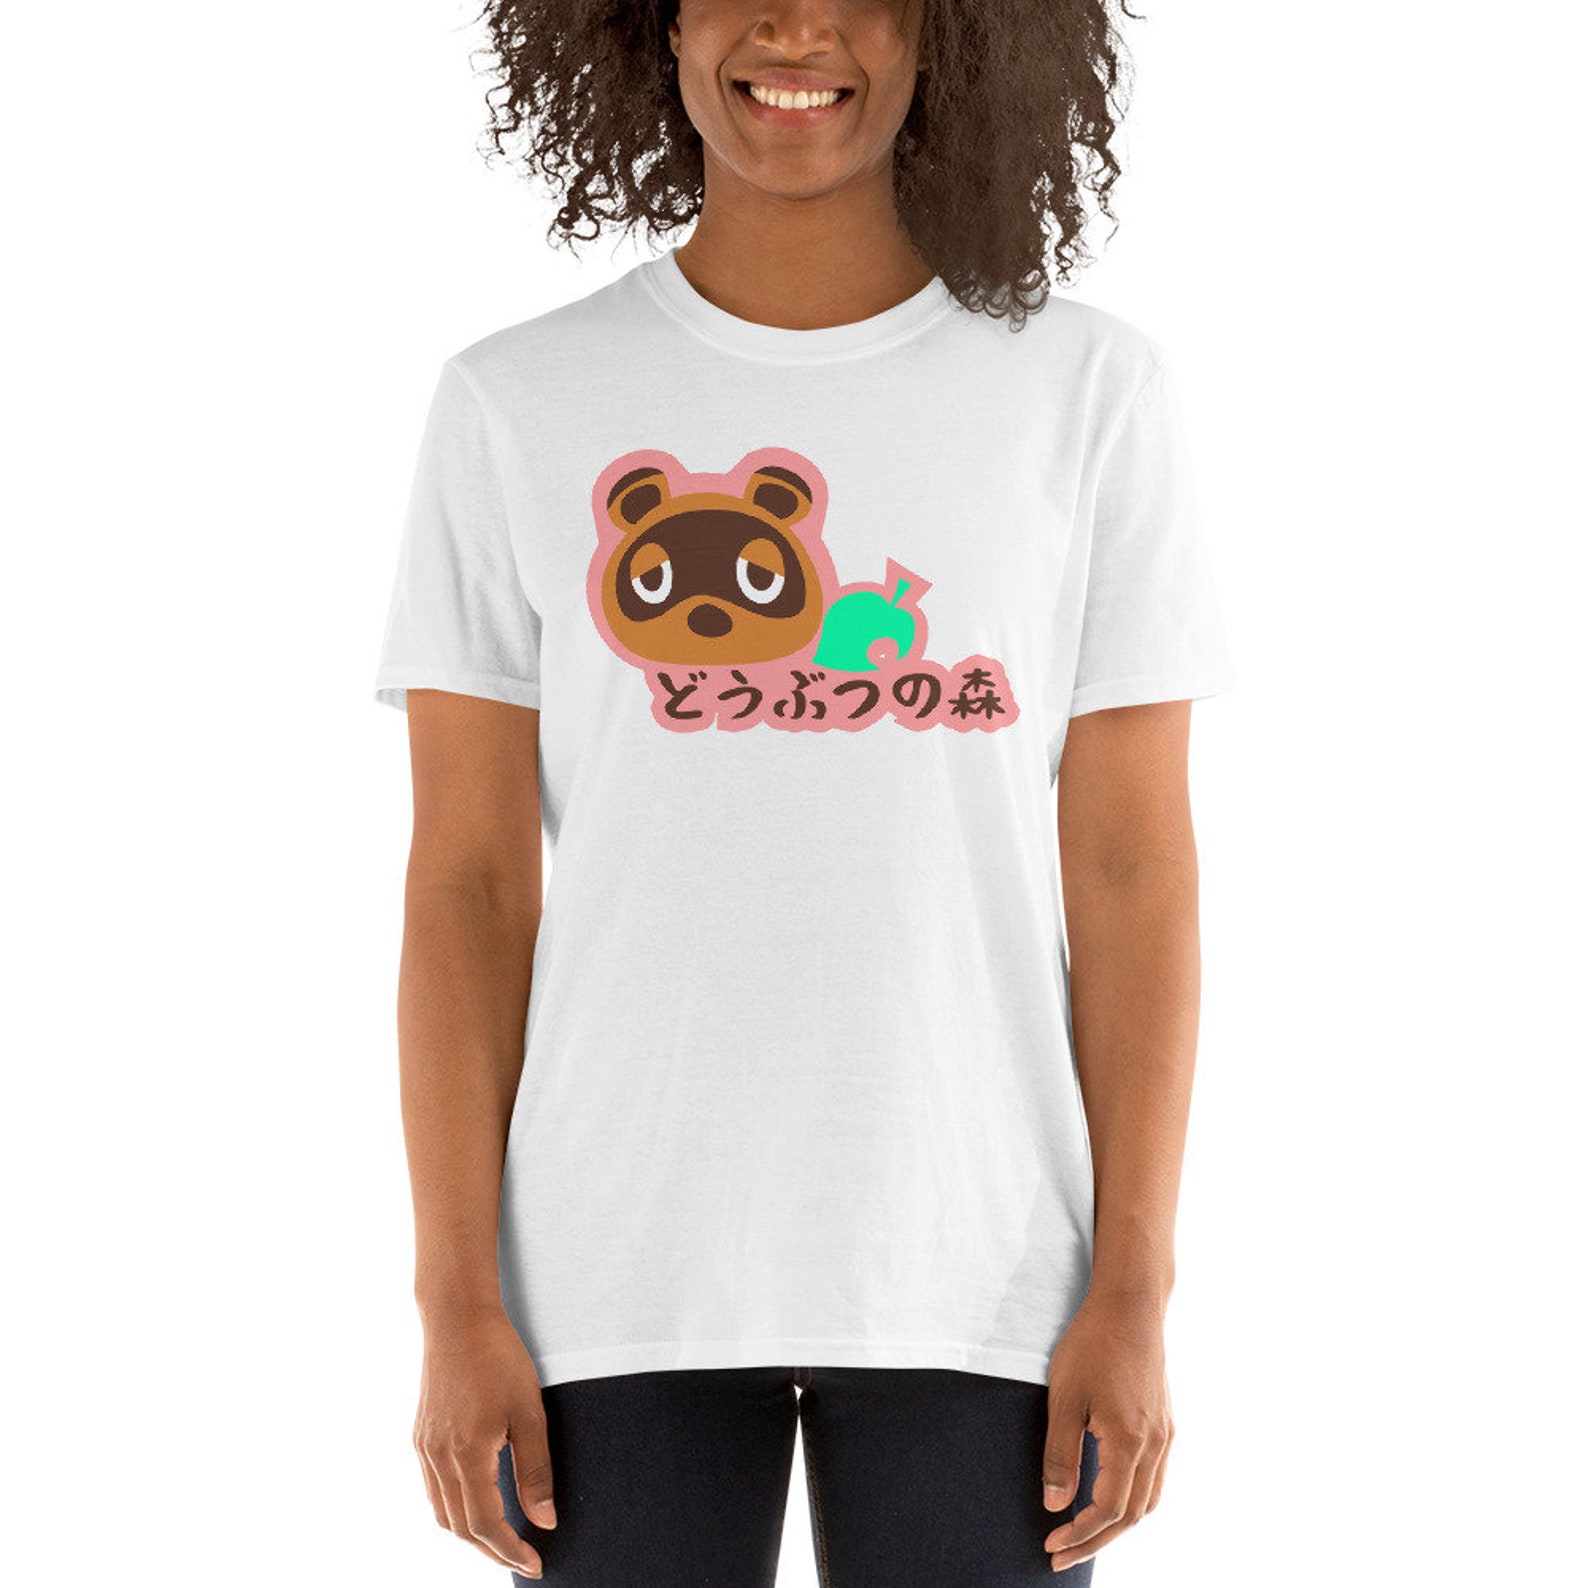 Animal Crossing t-shirt どうぶつの森 t-shirt Animal Crossing New | Etsy